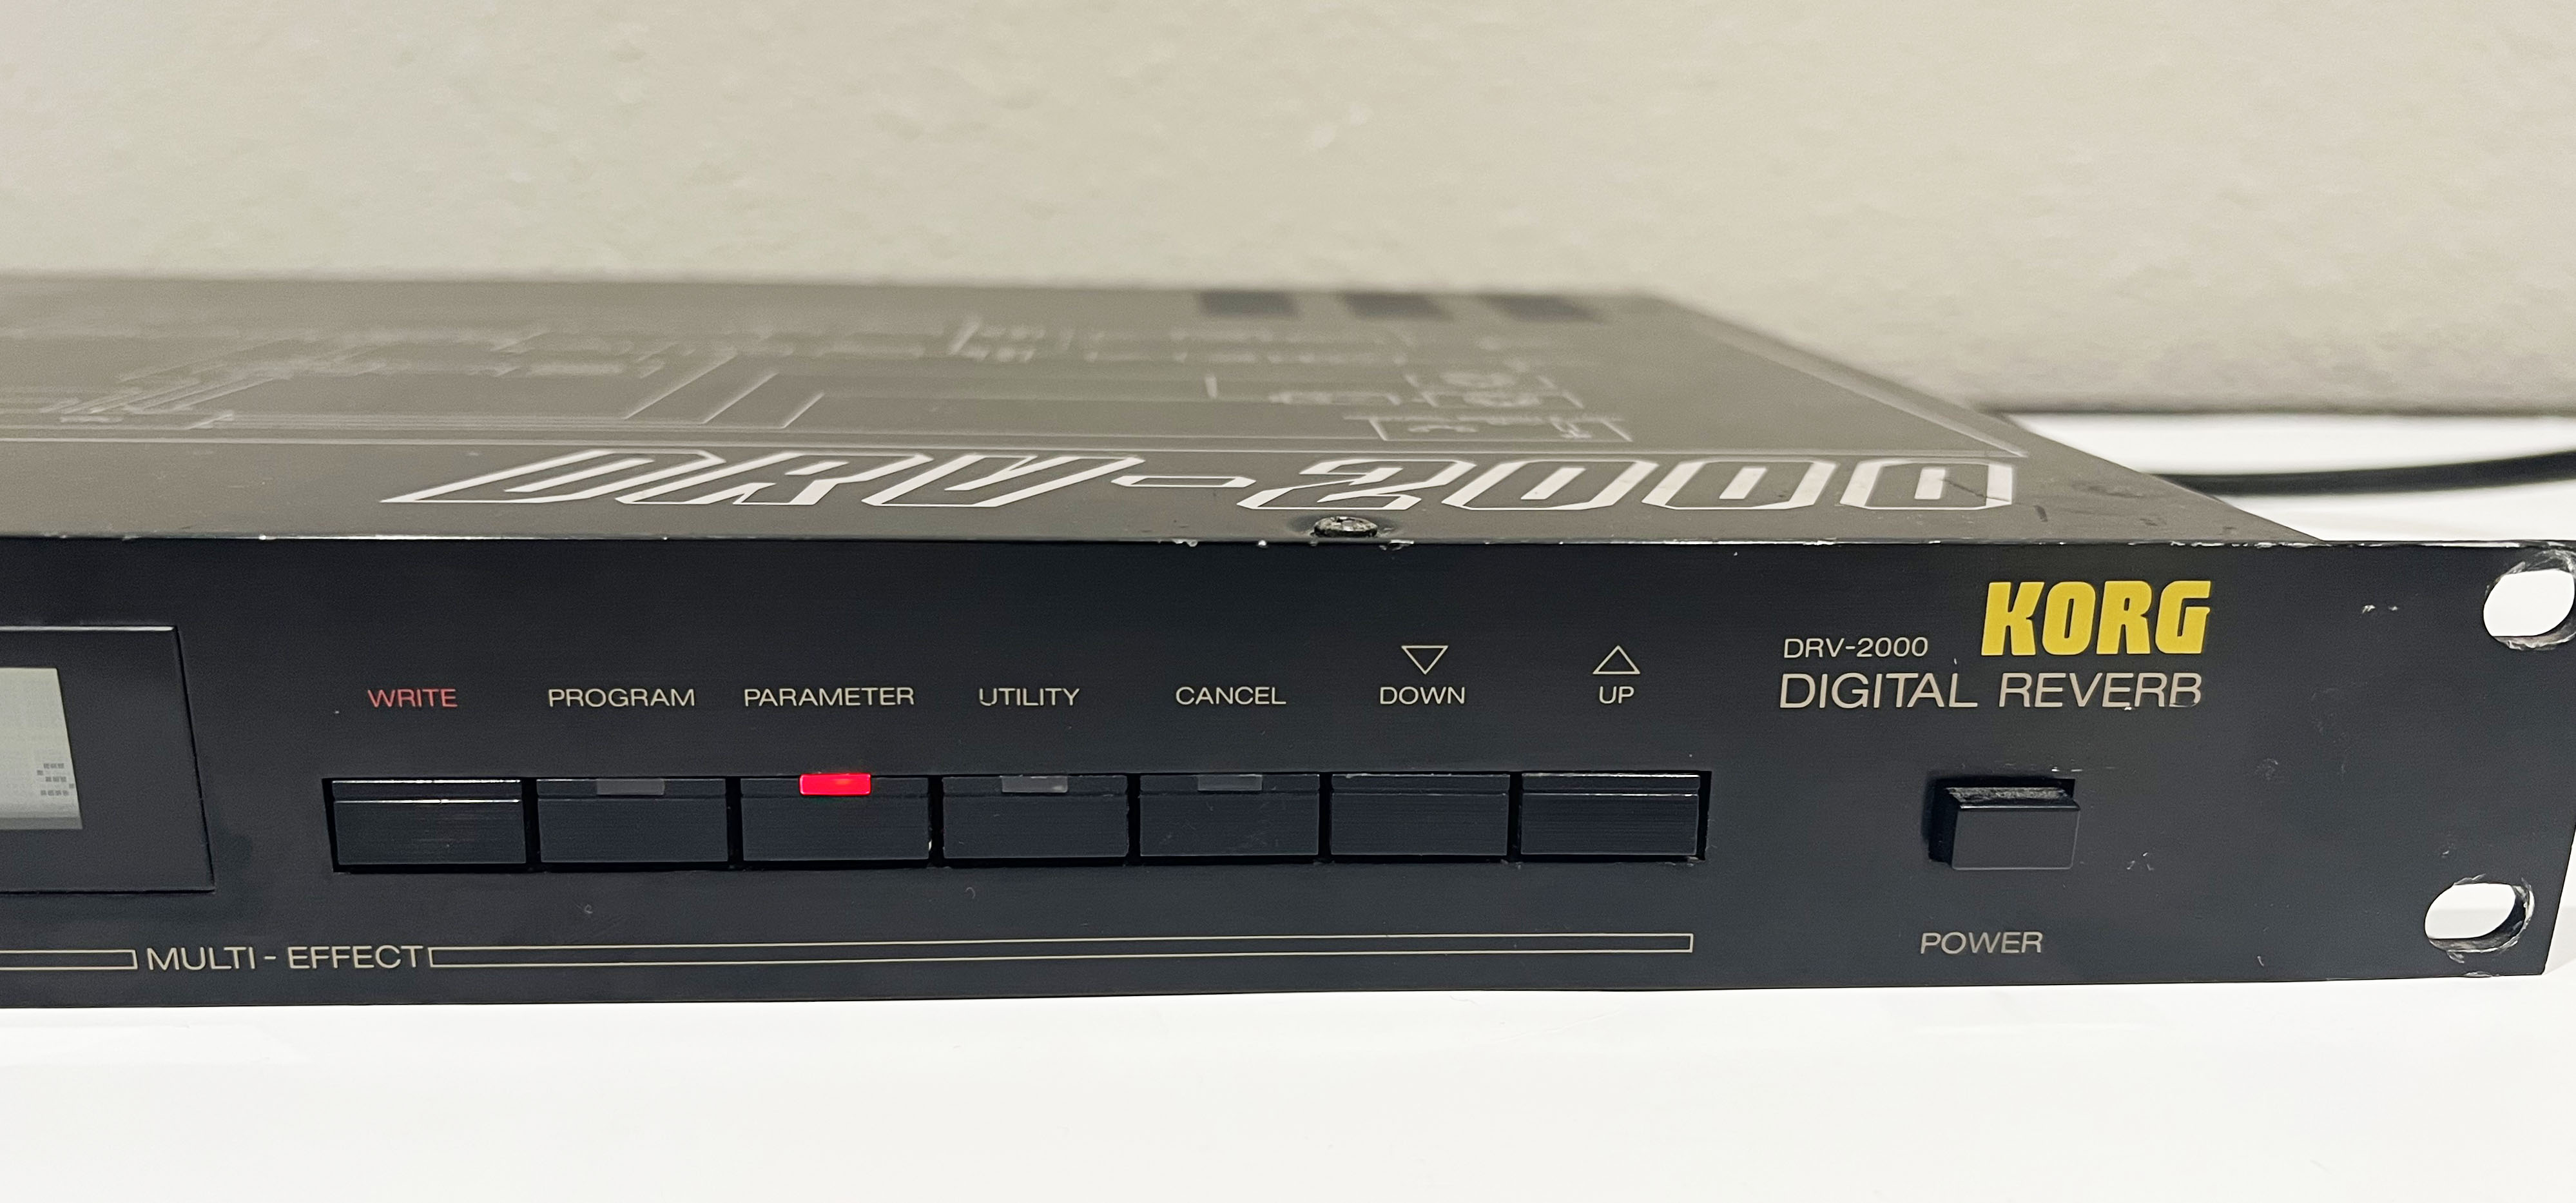 Korg DRV-2000 digital reverb